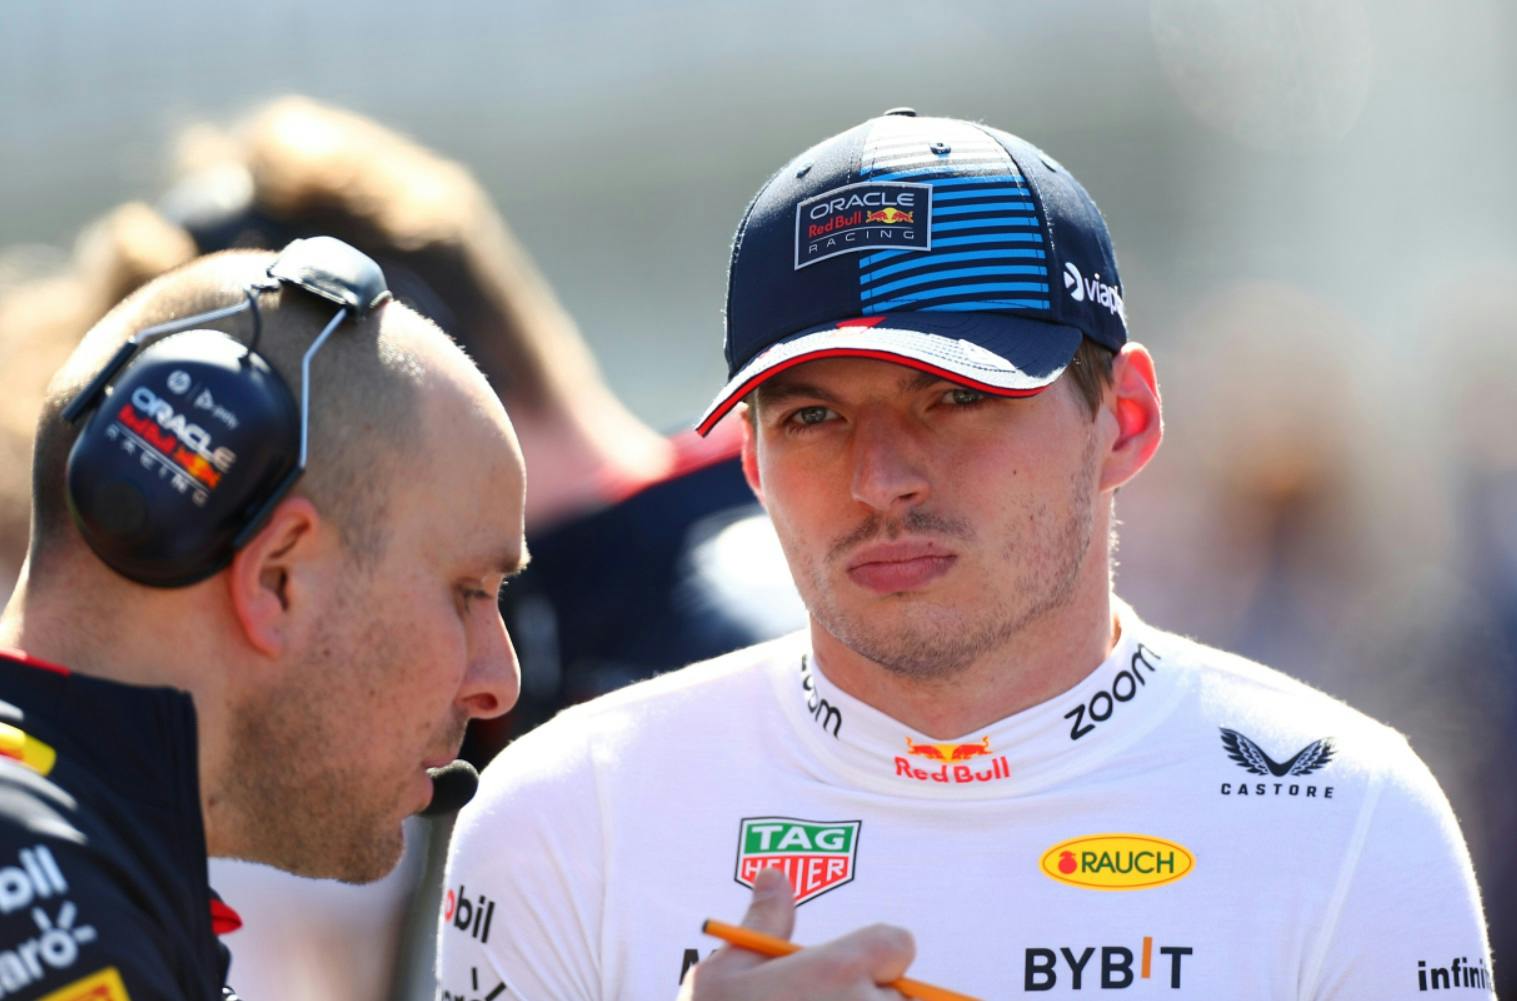 Problemy Verstappena zaczęły się już na samym starcie wyścigu F1